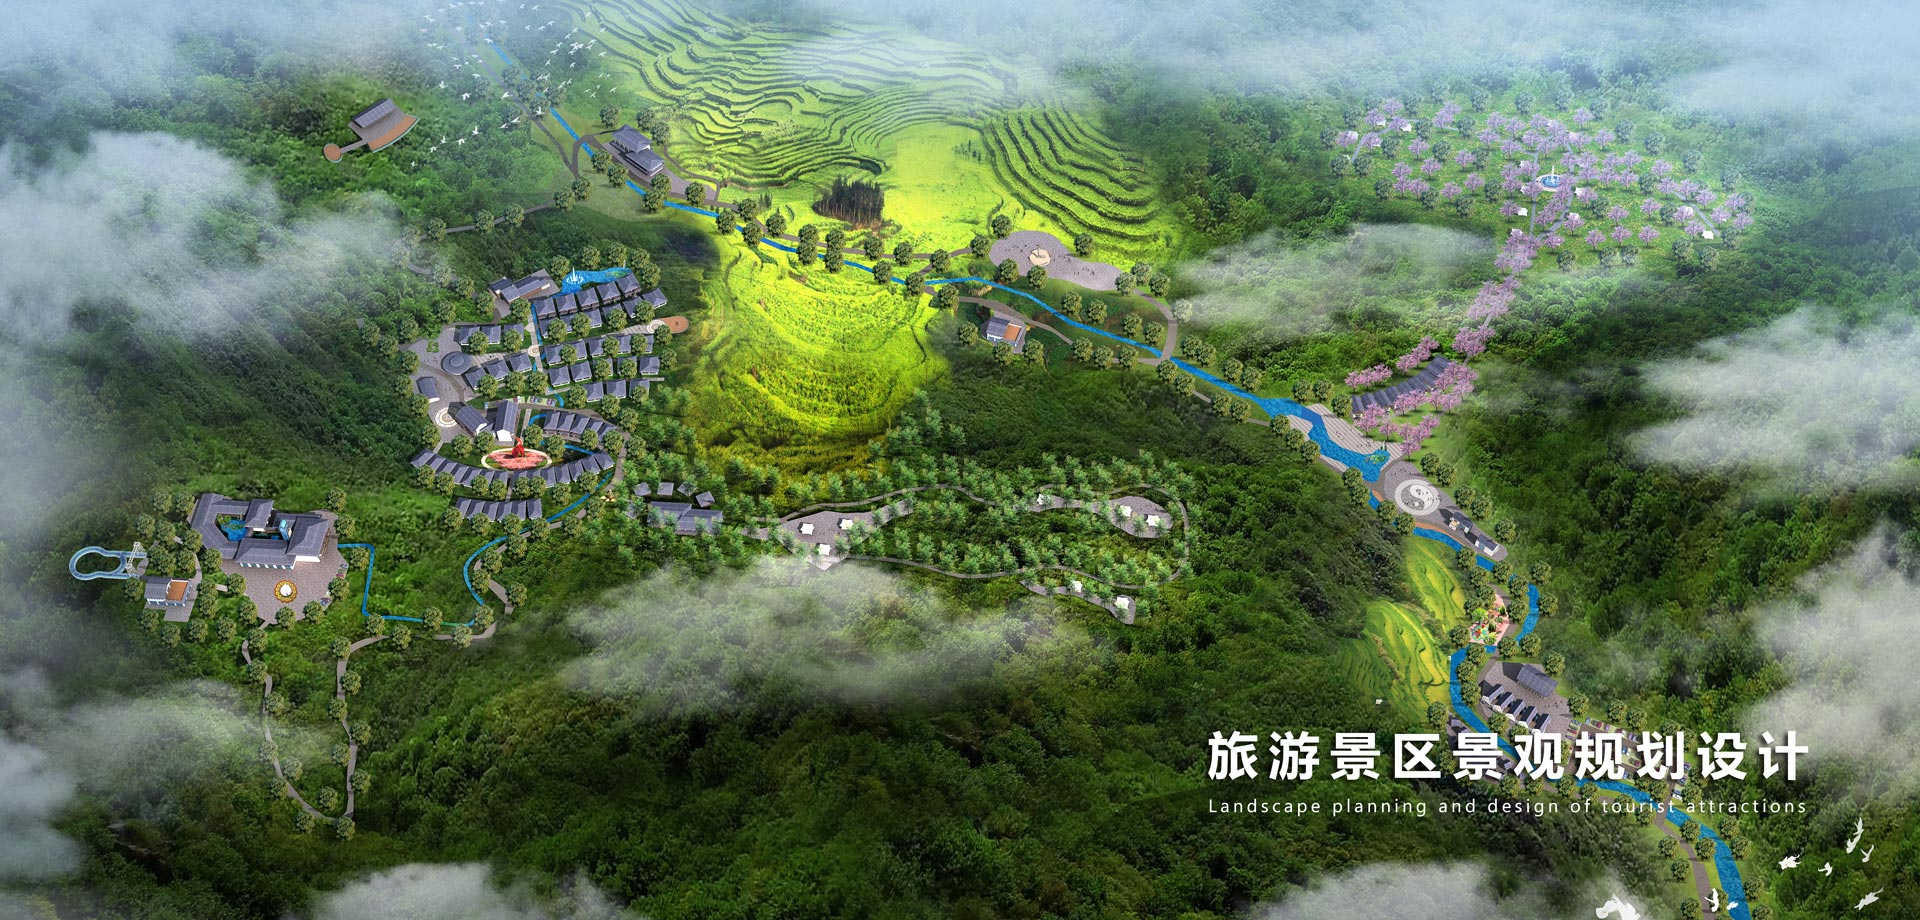 旅遊景區(qū)景觀規劃設計